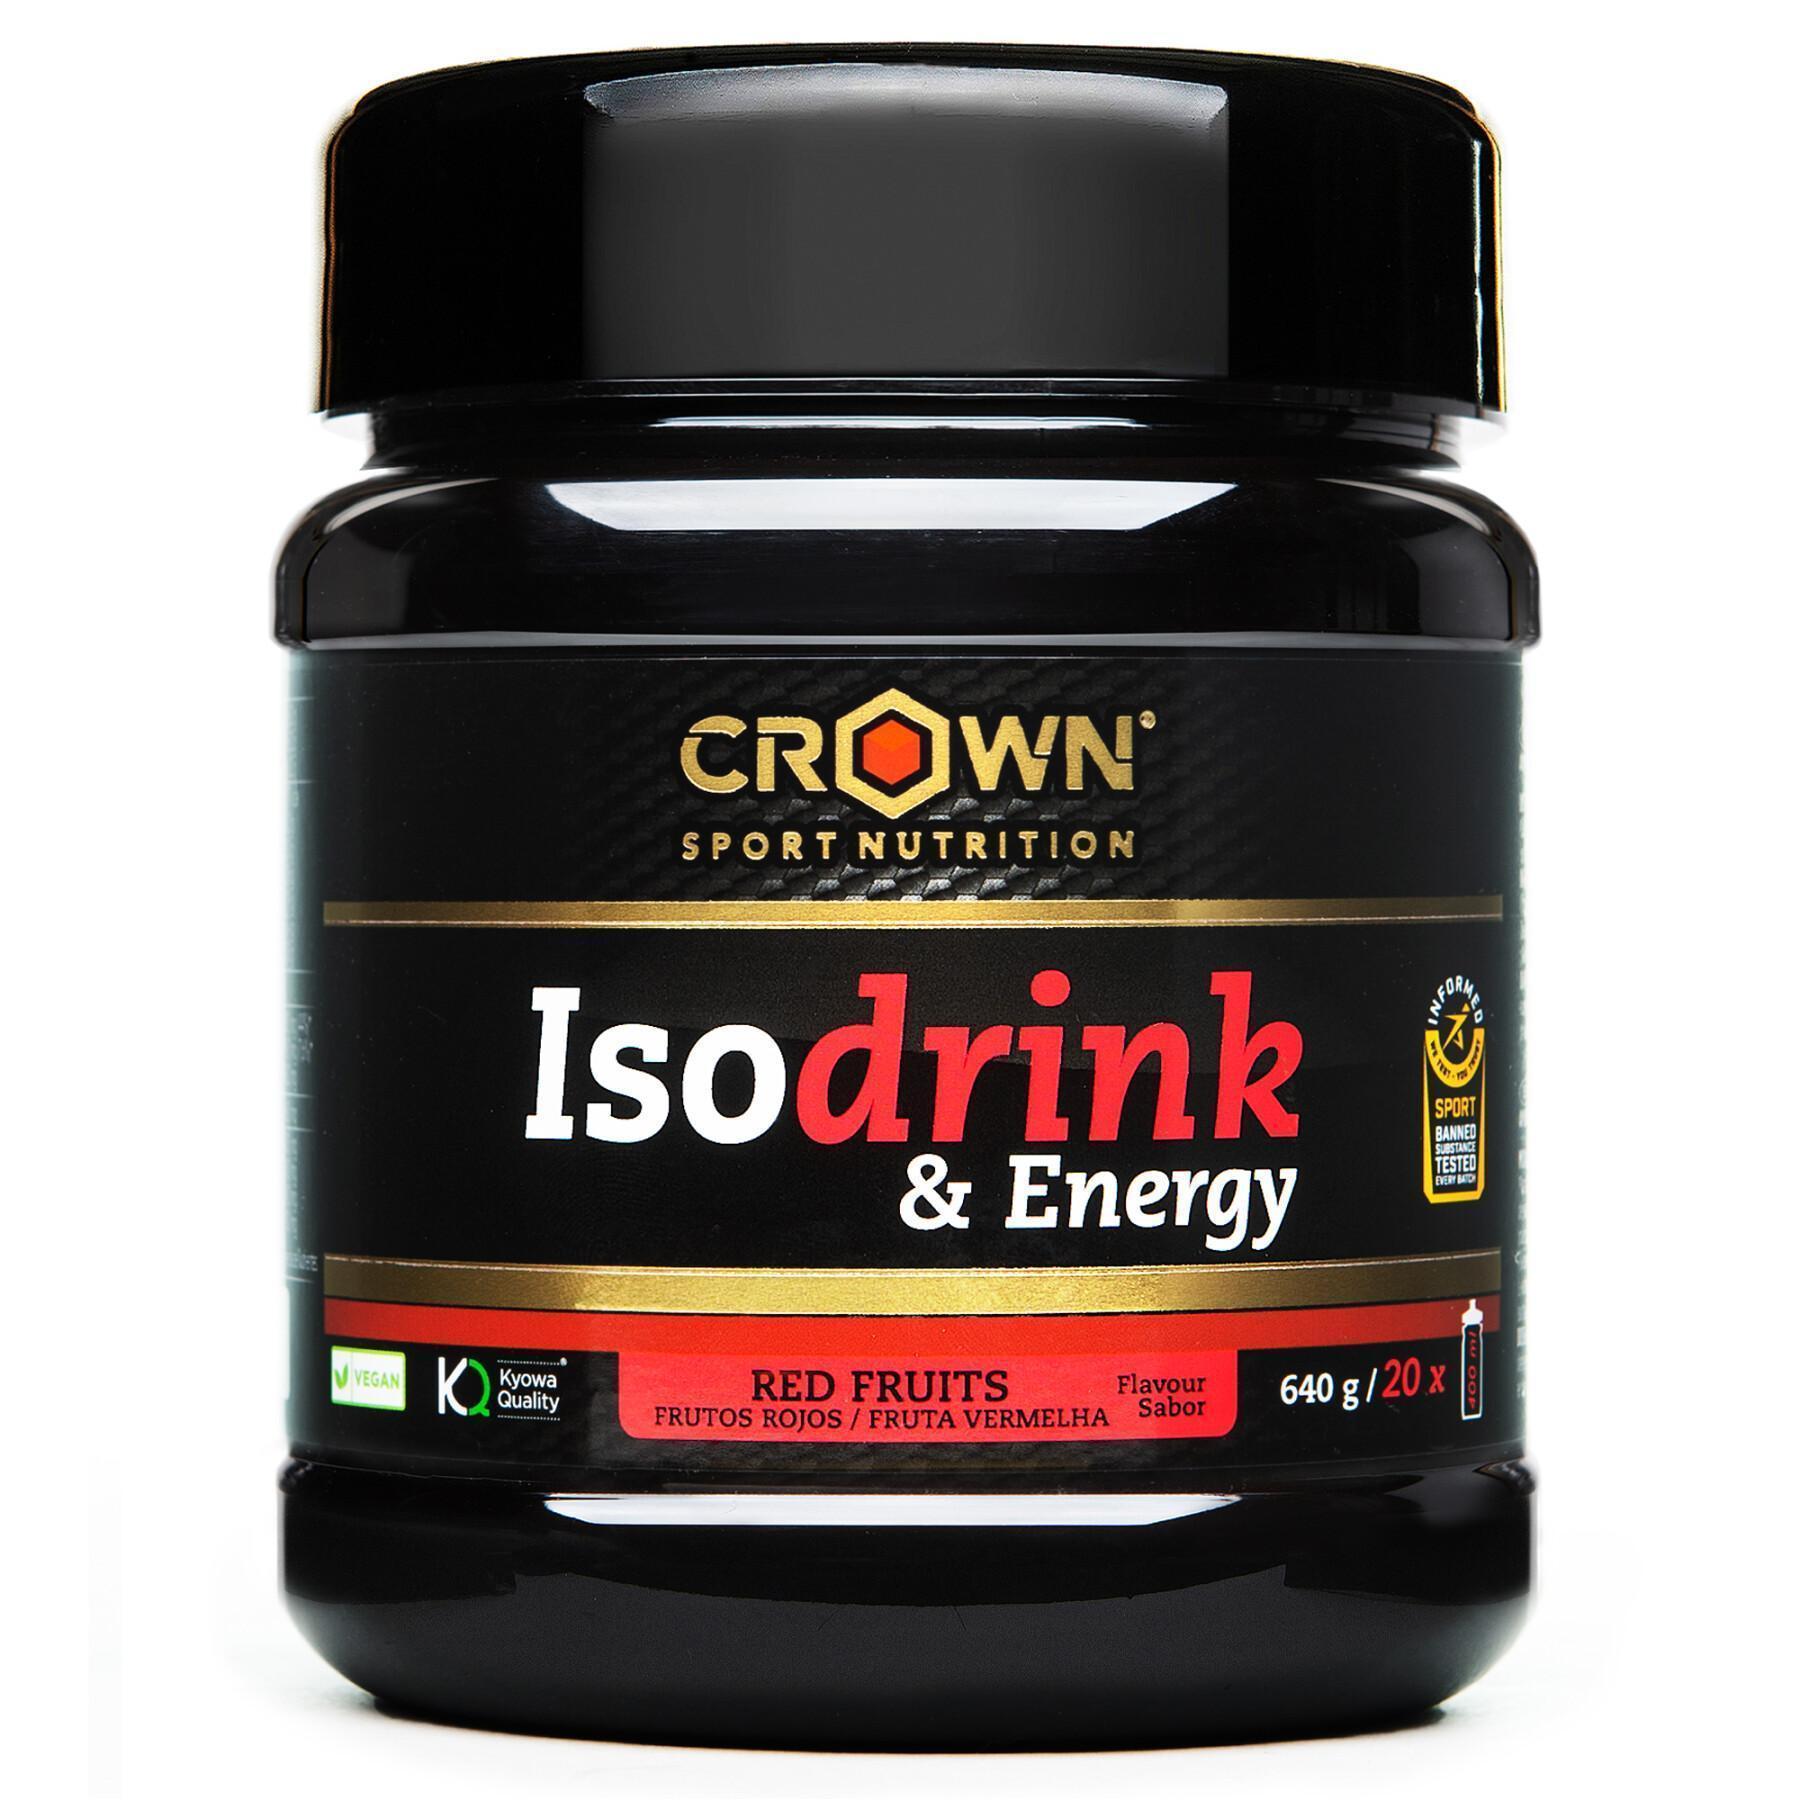 Bebida energética Crown Sport Nutrition Isodrink & Energy informed sport - fruits rouges - 640 g